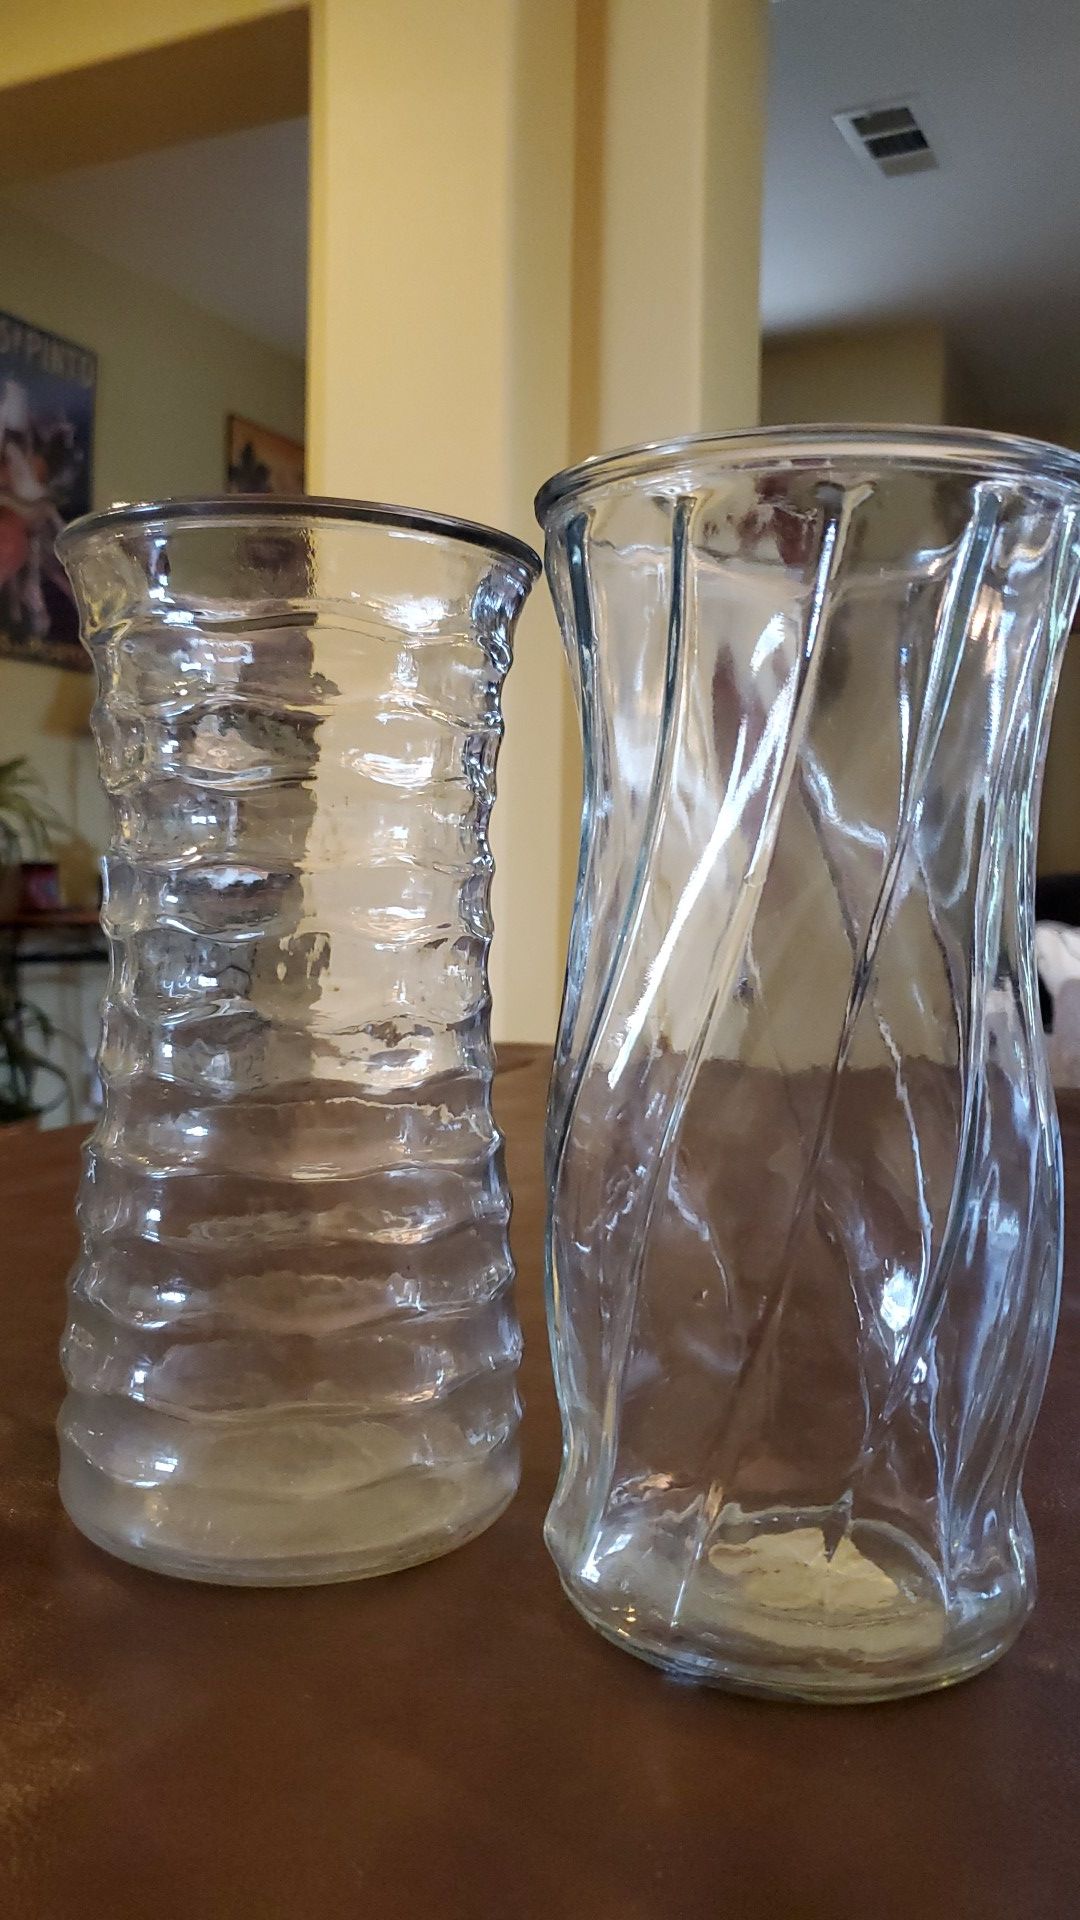 Glass flower vases